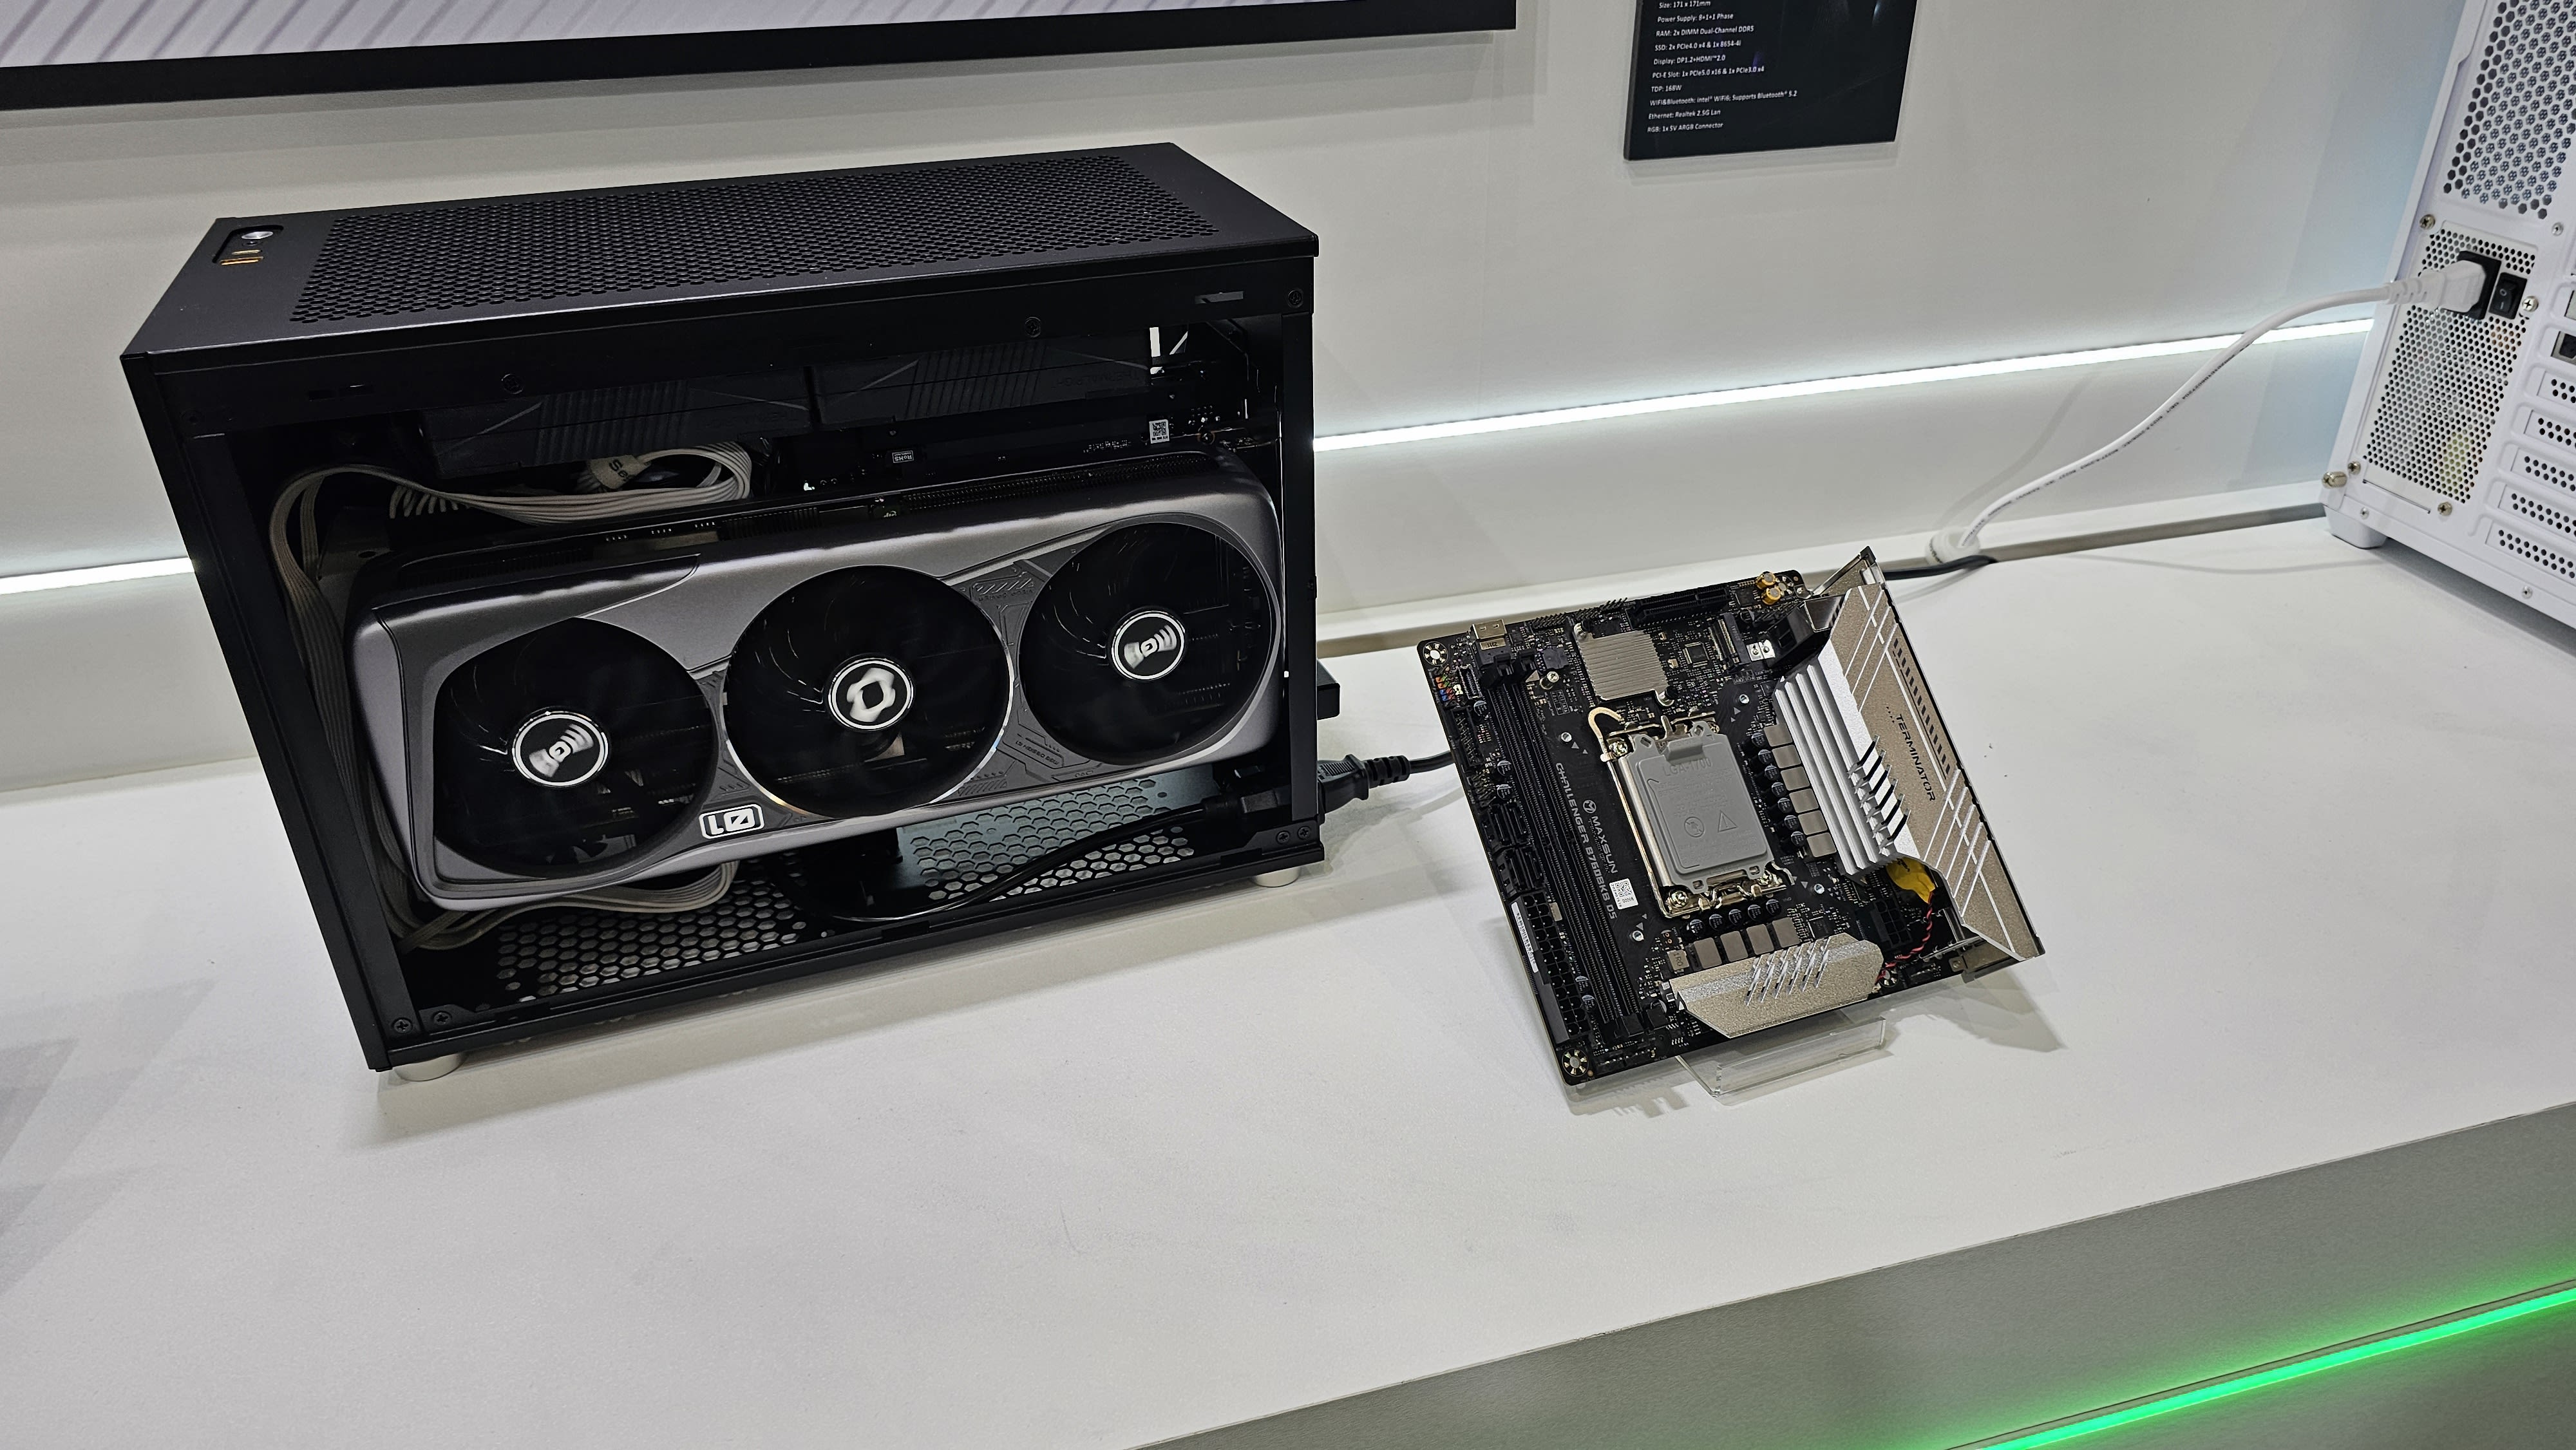 Maxsun's new mini-ITX motherboard puts the GPU slot on its backside